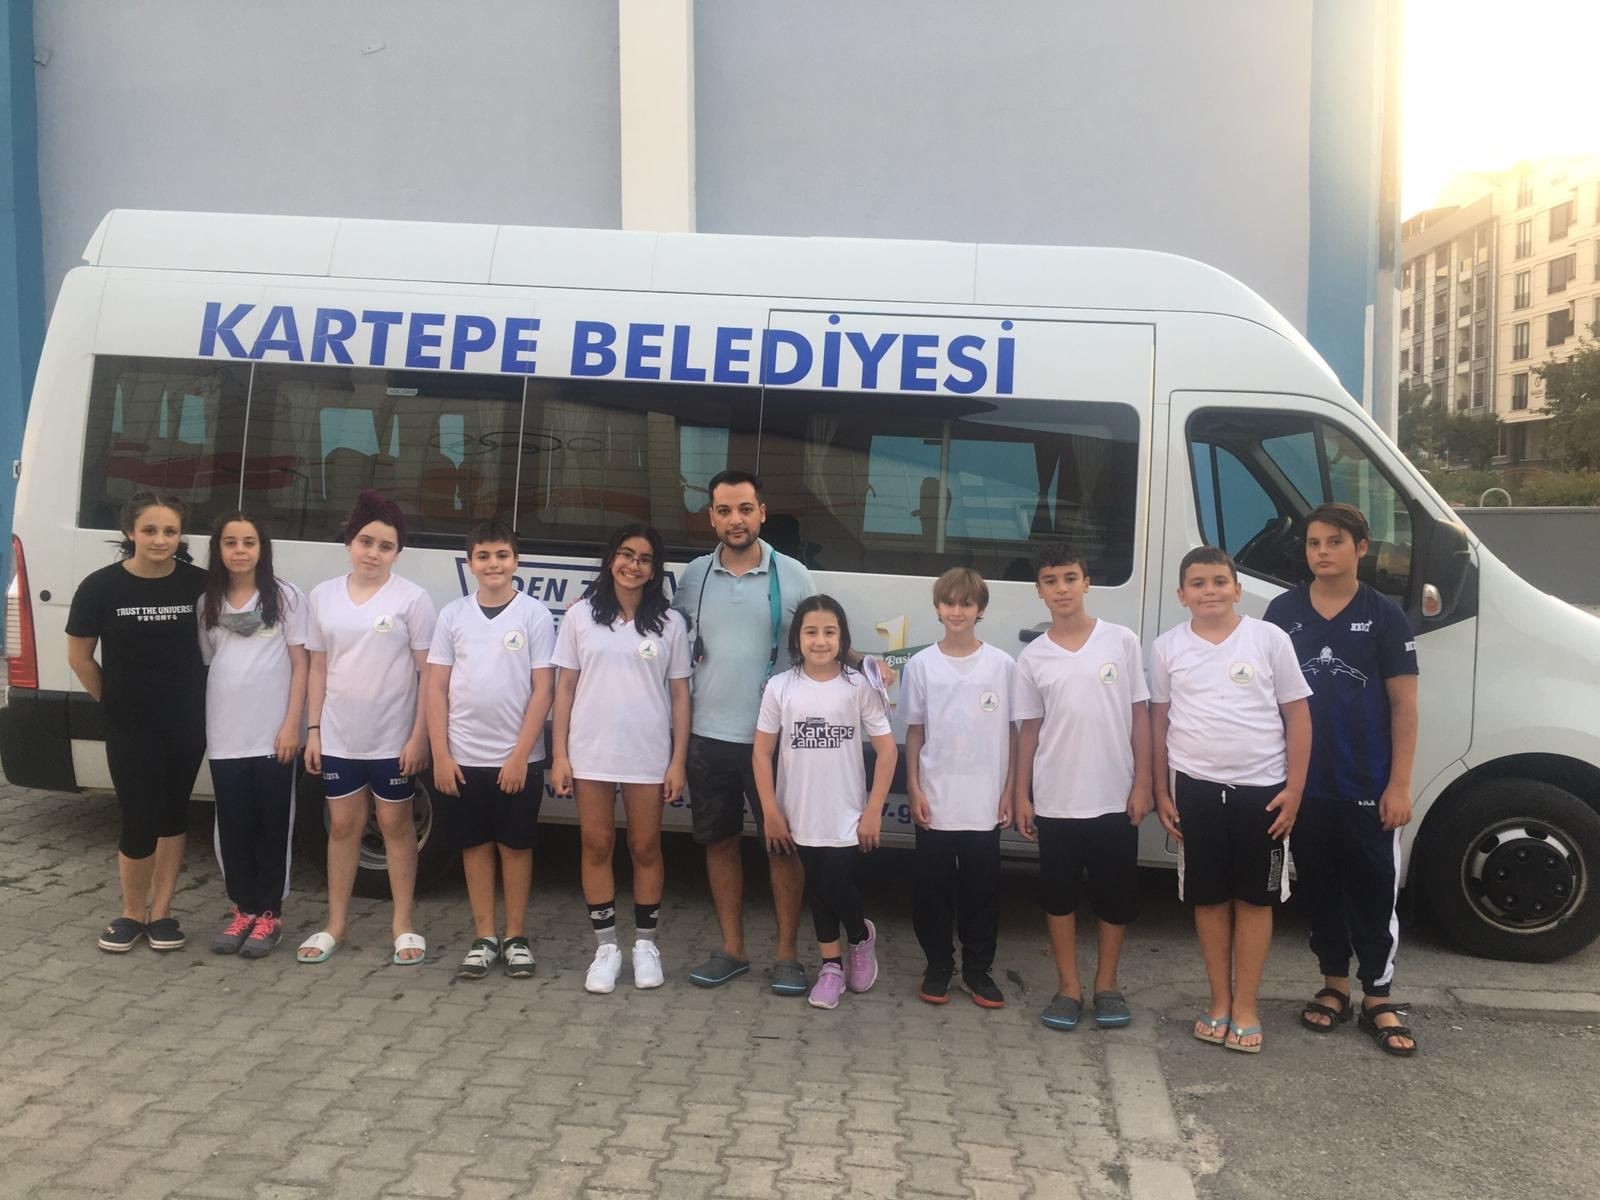 Kartepe’nin yüzücüleri Türkiye şampiyonasına katılmaya hak kazandı #kocaeli